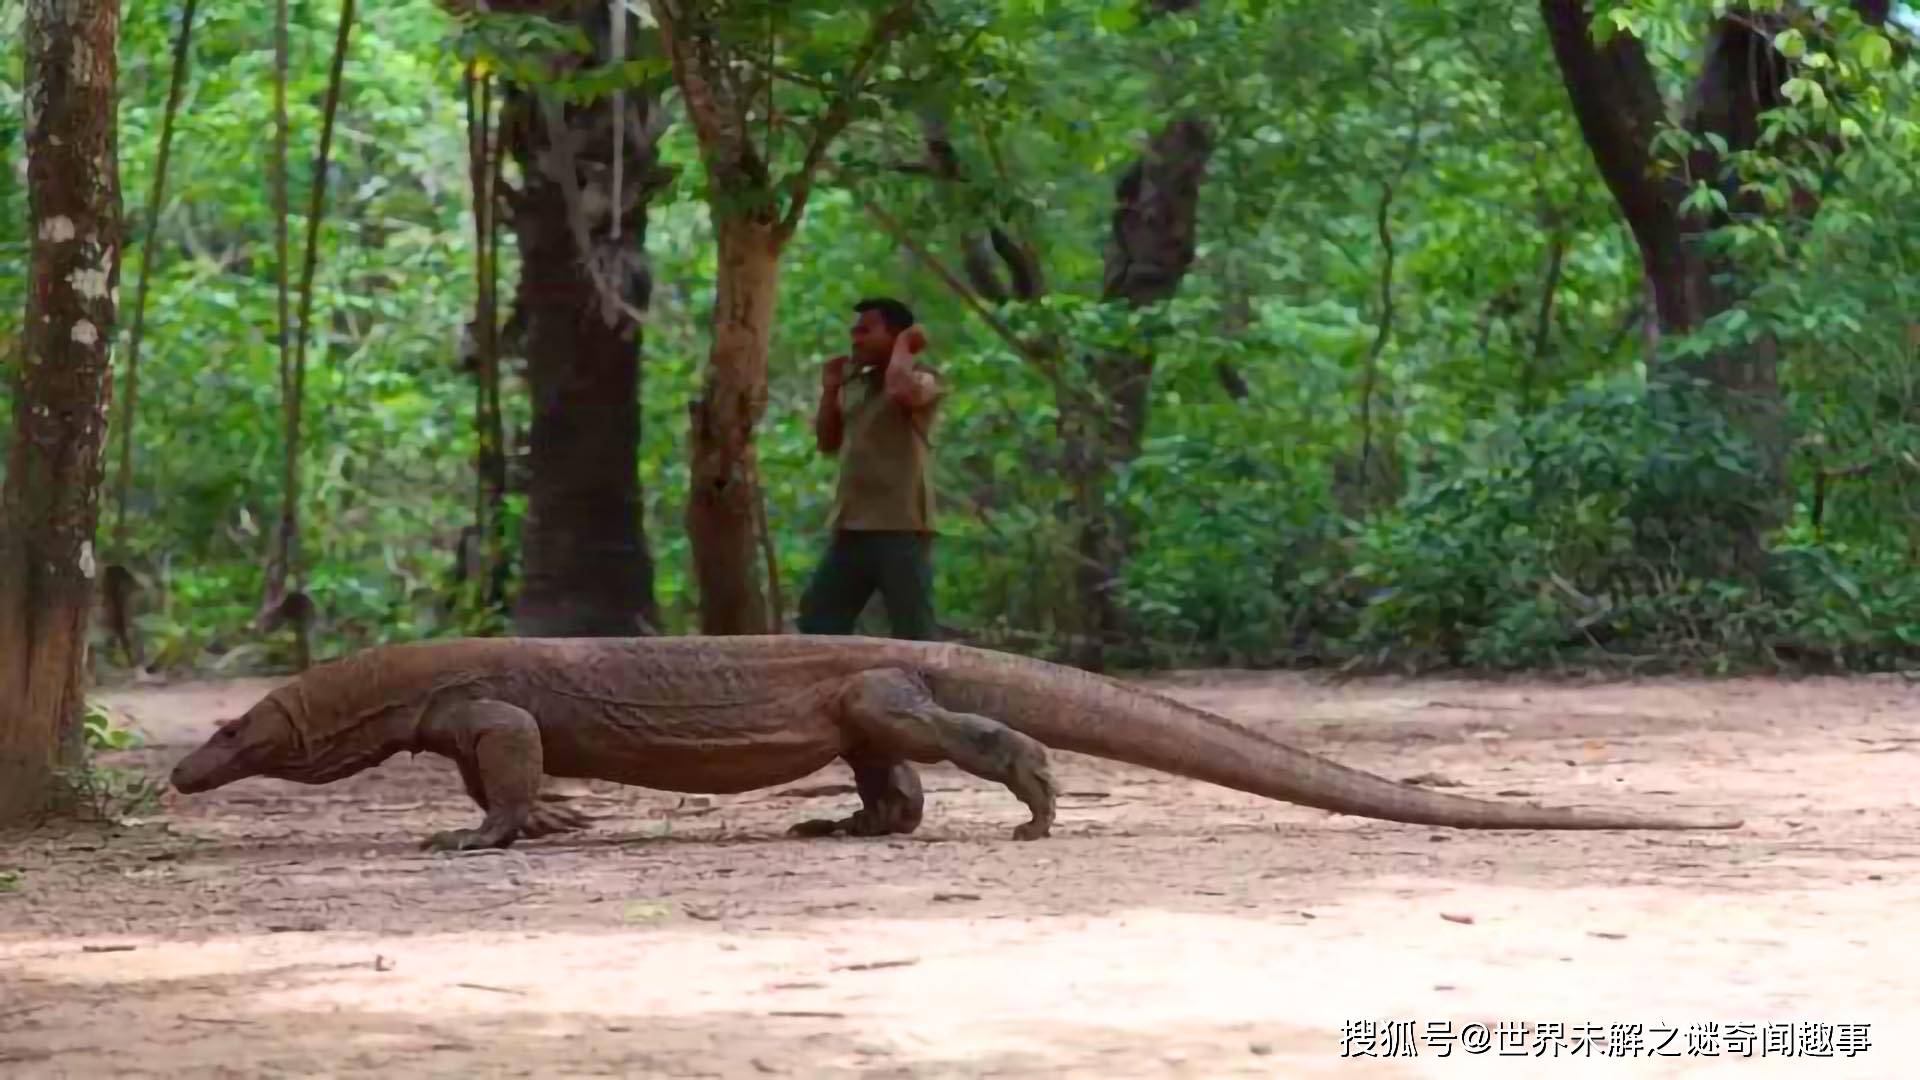 原创2米巨蜥,闯进泰国一家便利店,为何泰国经常出现巨蜥事件?